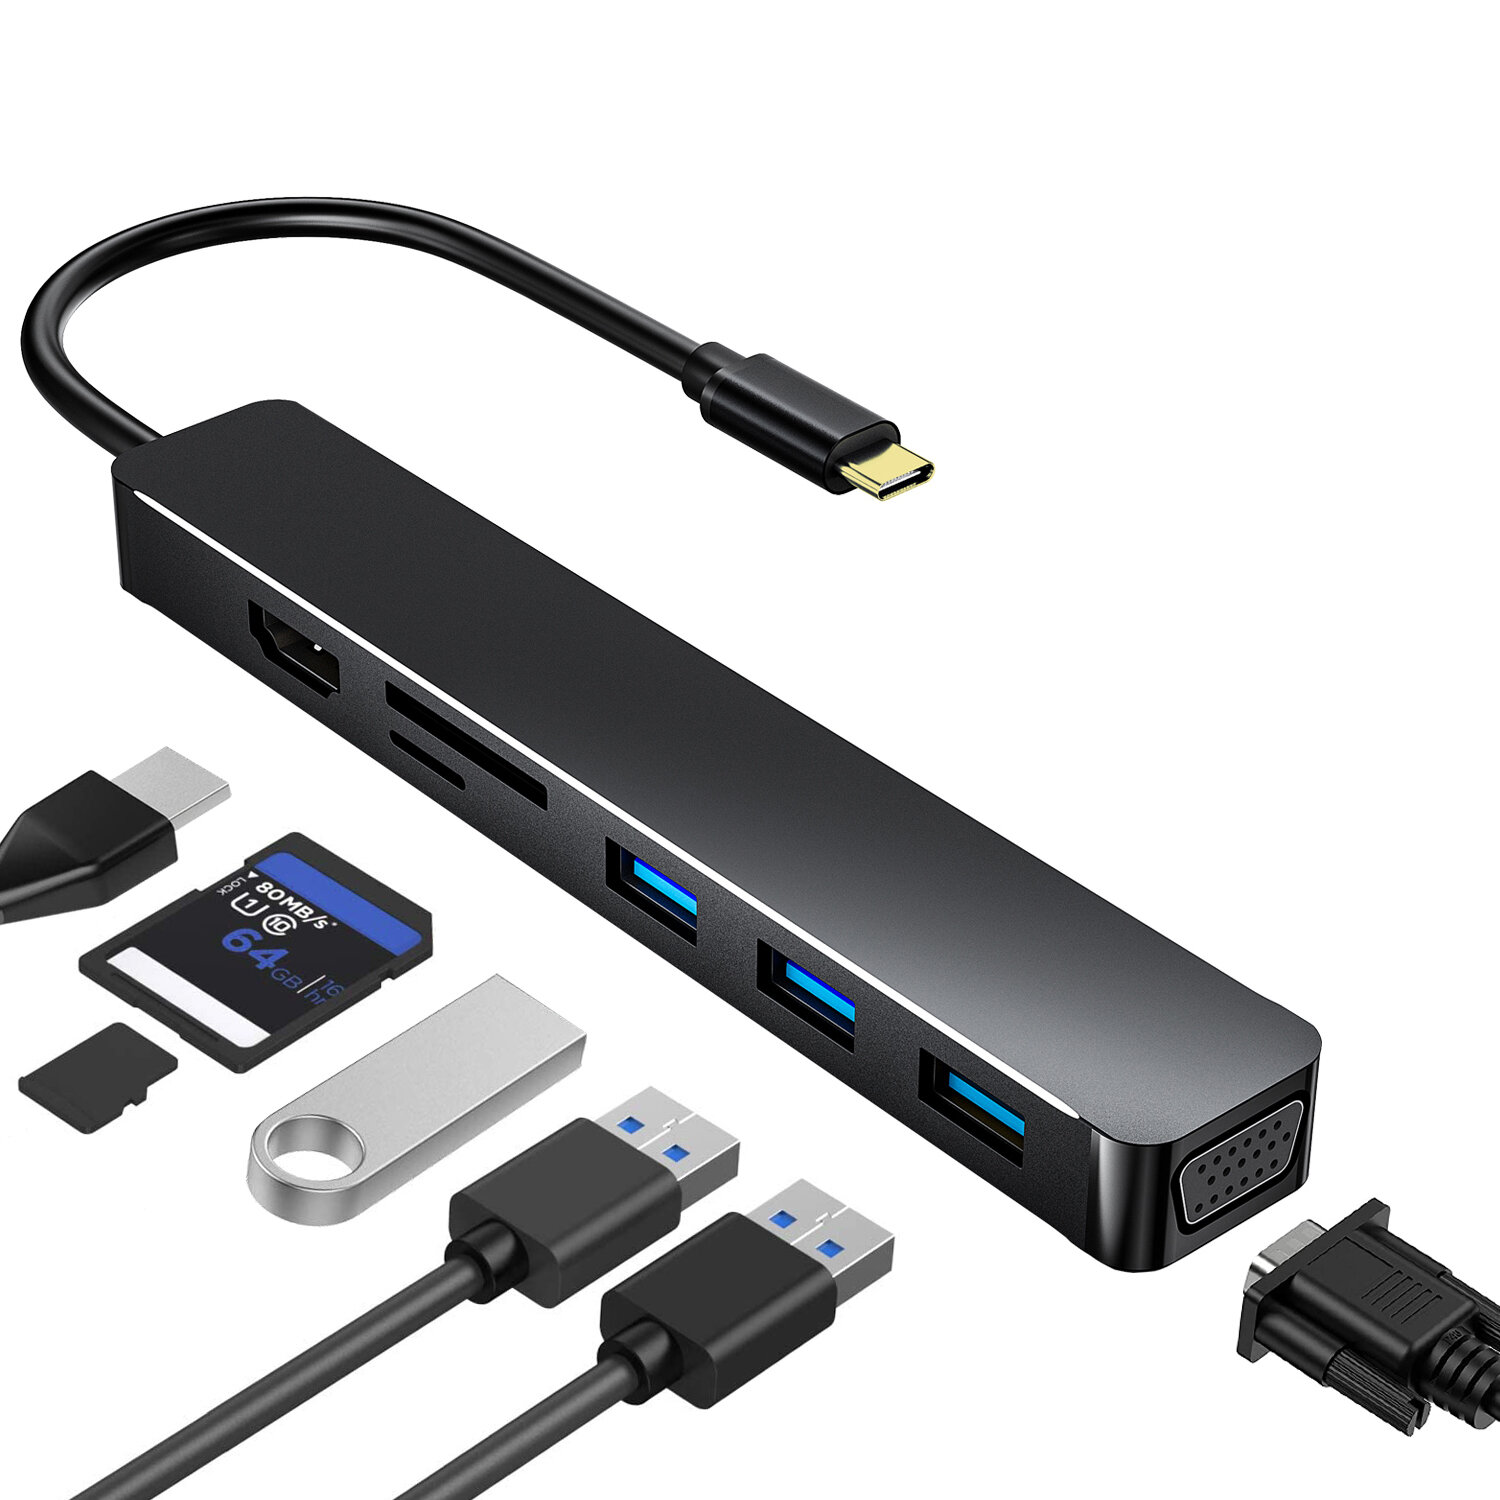 

Адаптер для док-станции Bakeey USB-C HUB 7-в-1 с 4K HDMI / VGA / USB3.0 * 3 / устройствами чтения карт памяти